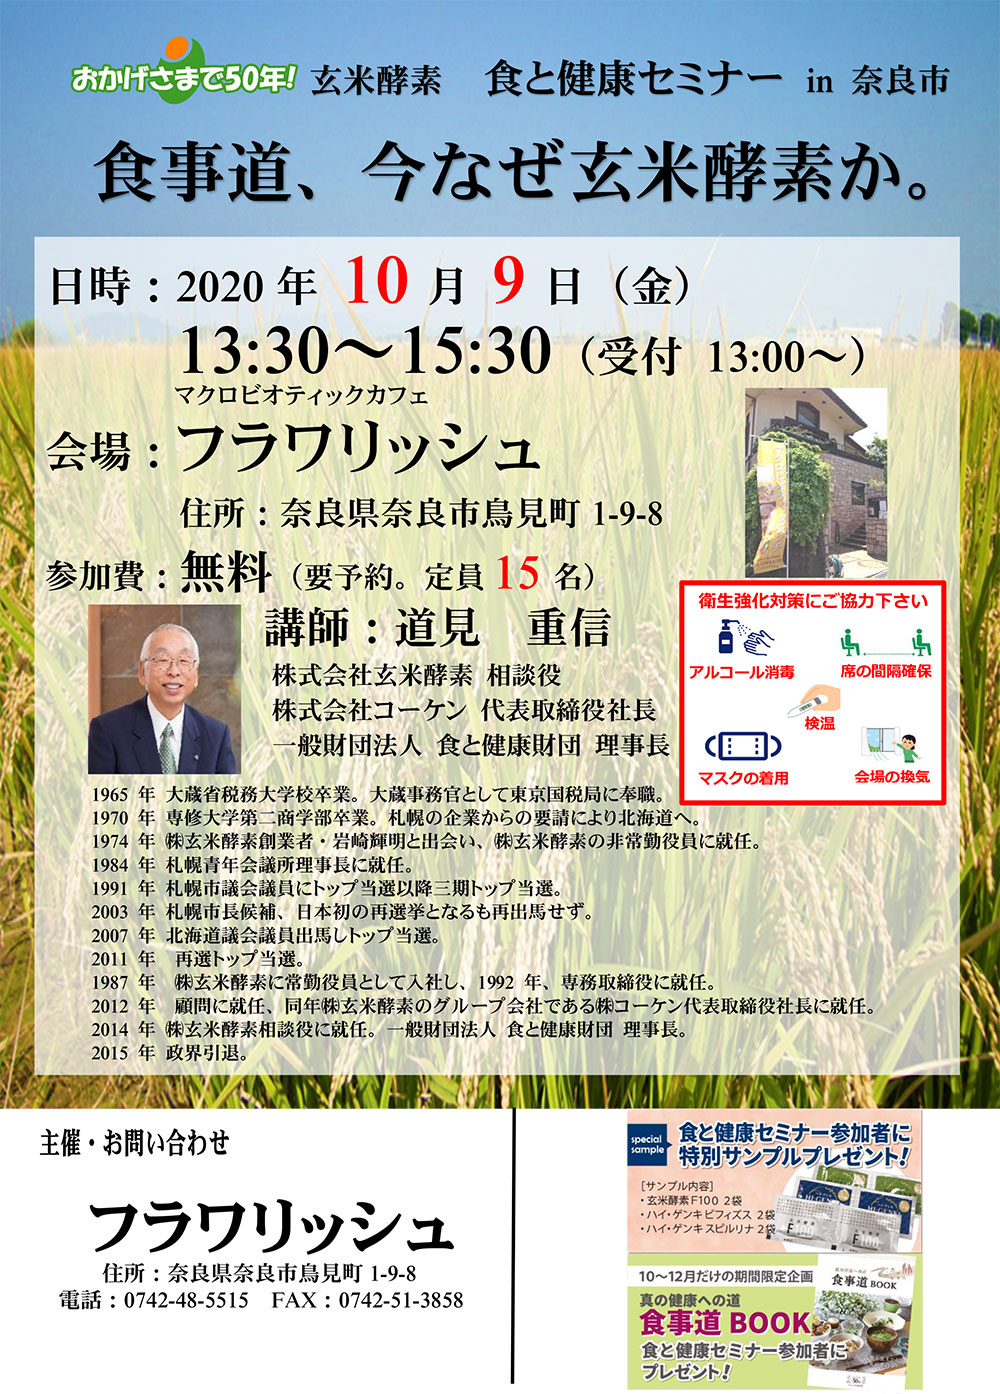 株式会社玄米酵素 食と健康セミナーin奈良市